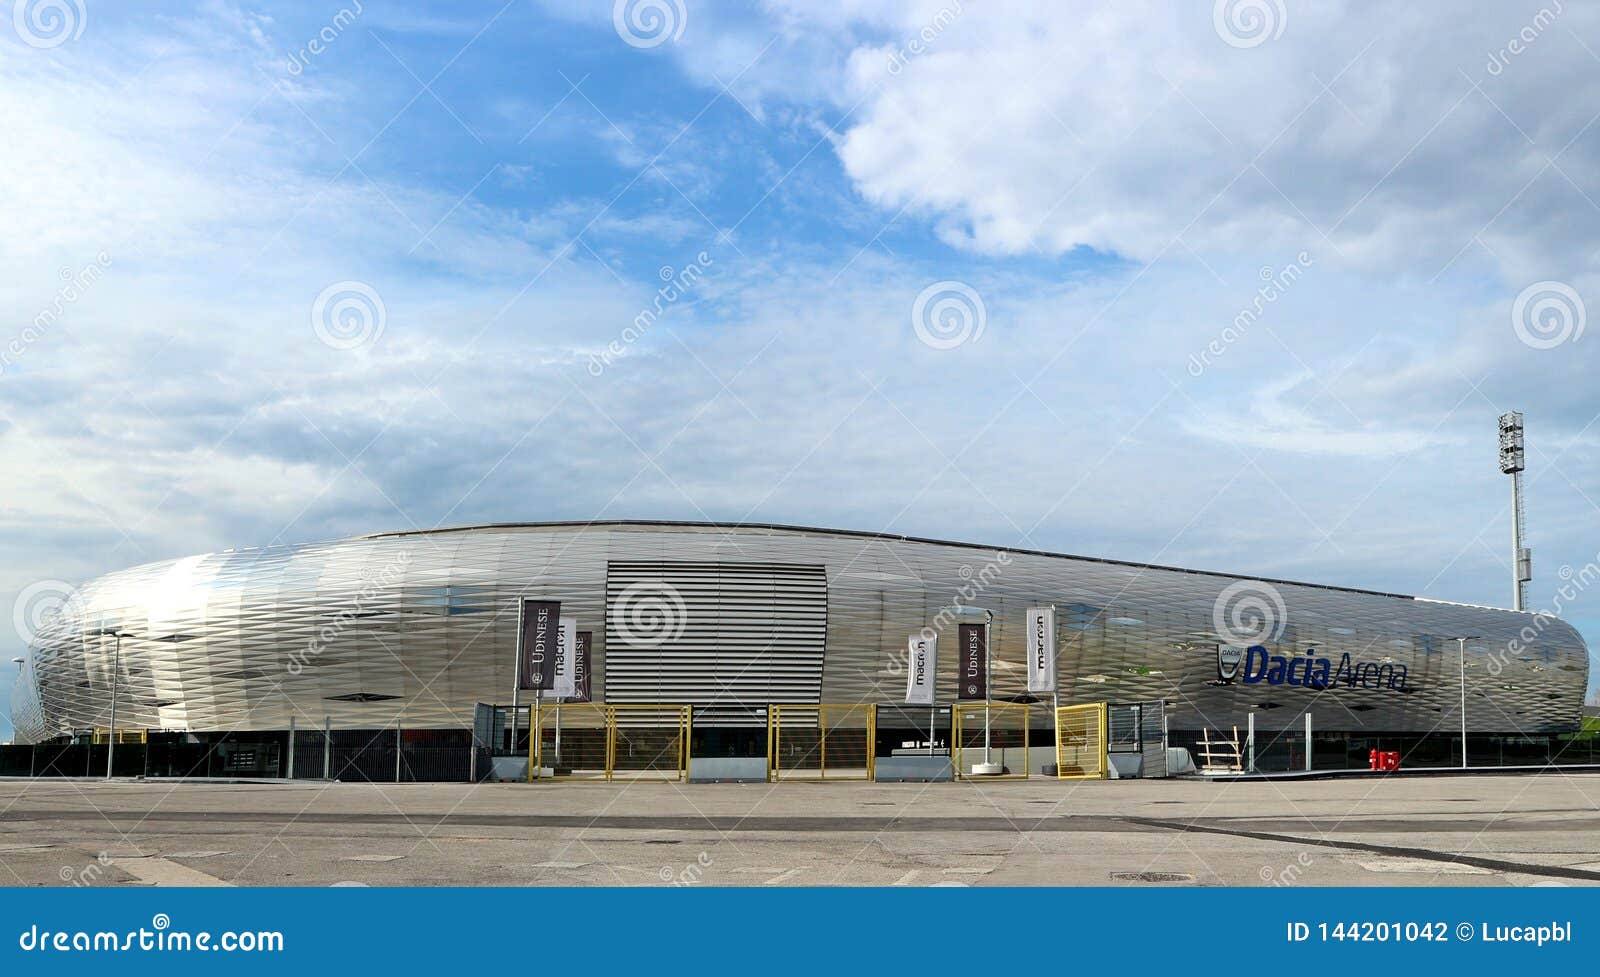 Dacia Arena, the stadium in Udine